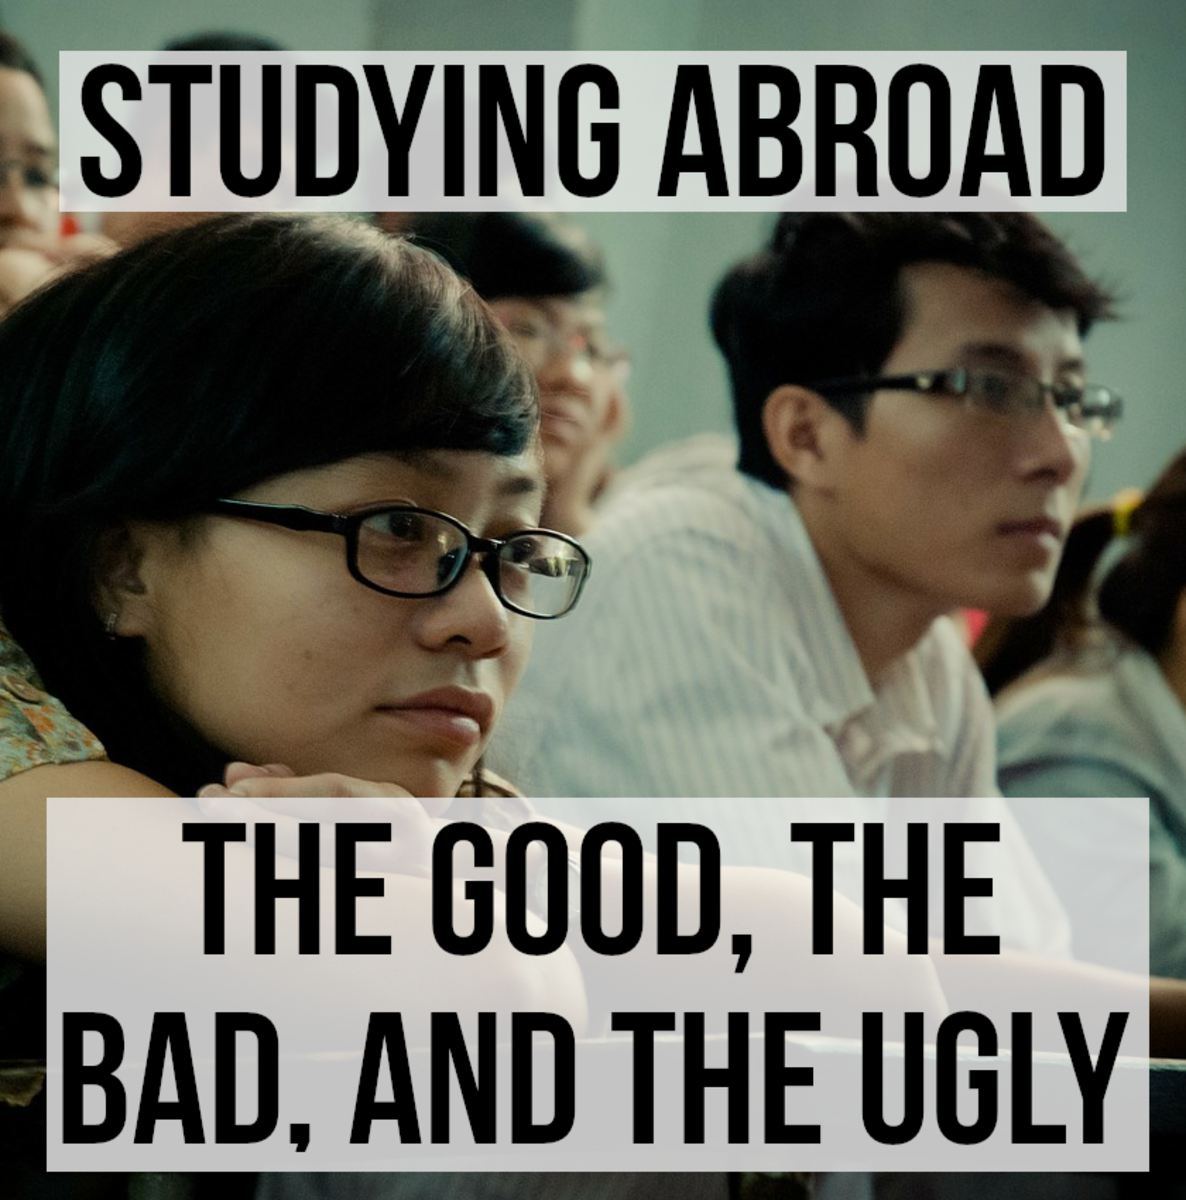 出国留学可以带来很多好处。它常常能开阔你的视野，加深你的学习经验。然而，也有缺点，如教育成本增加，以及需要克服的语言和文化障碍。